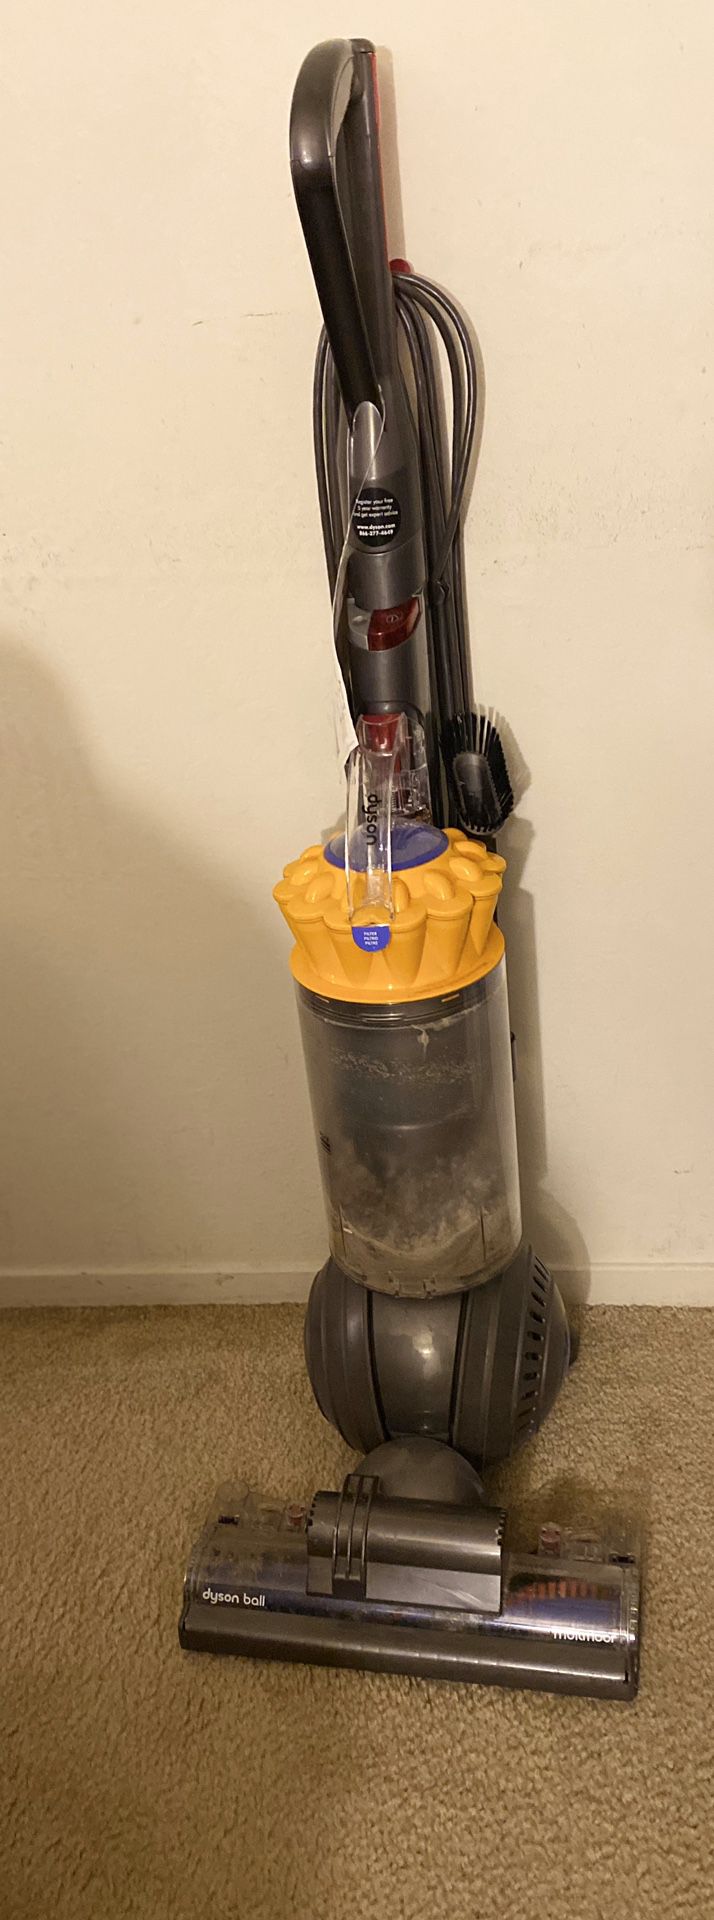 Dyson multi floor vacuum